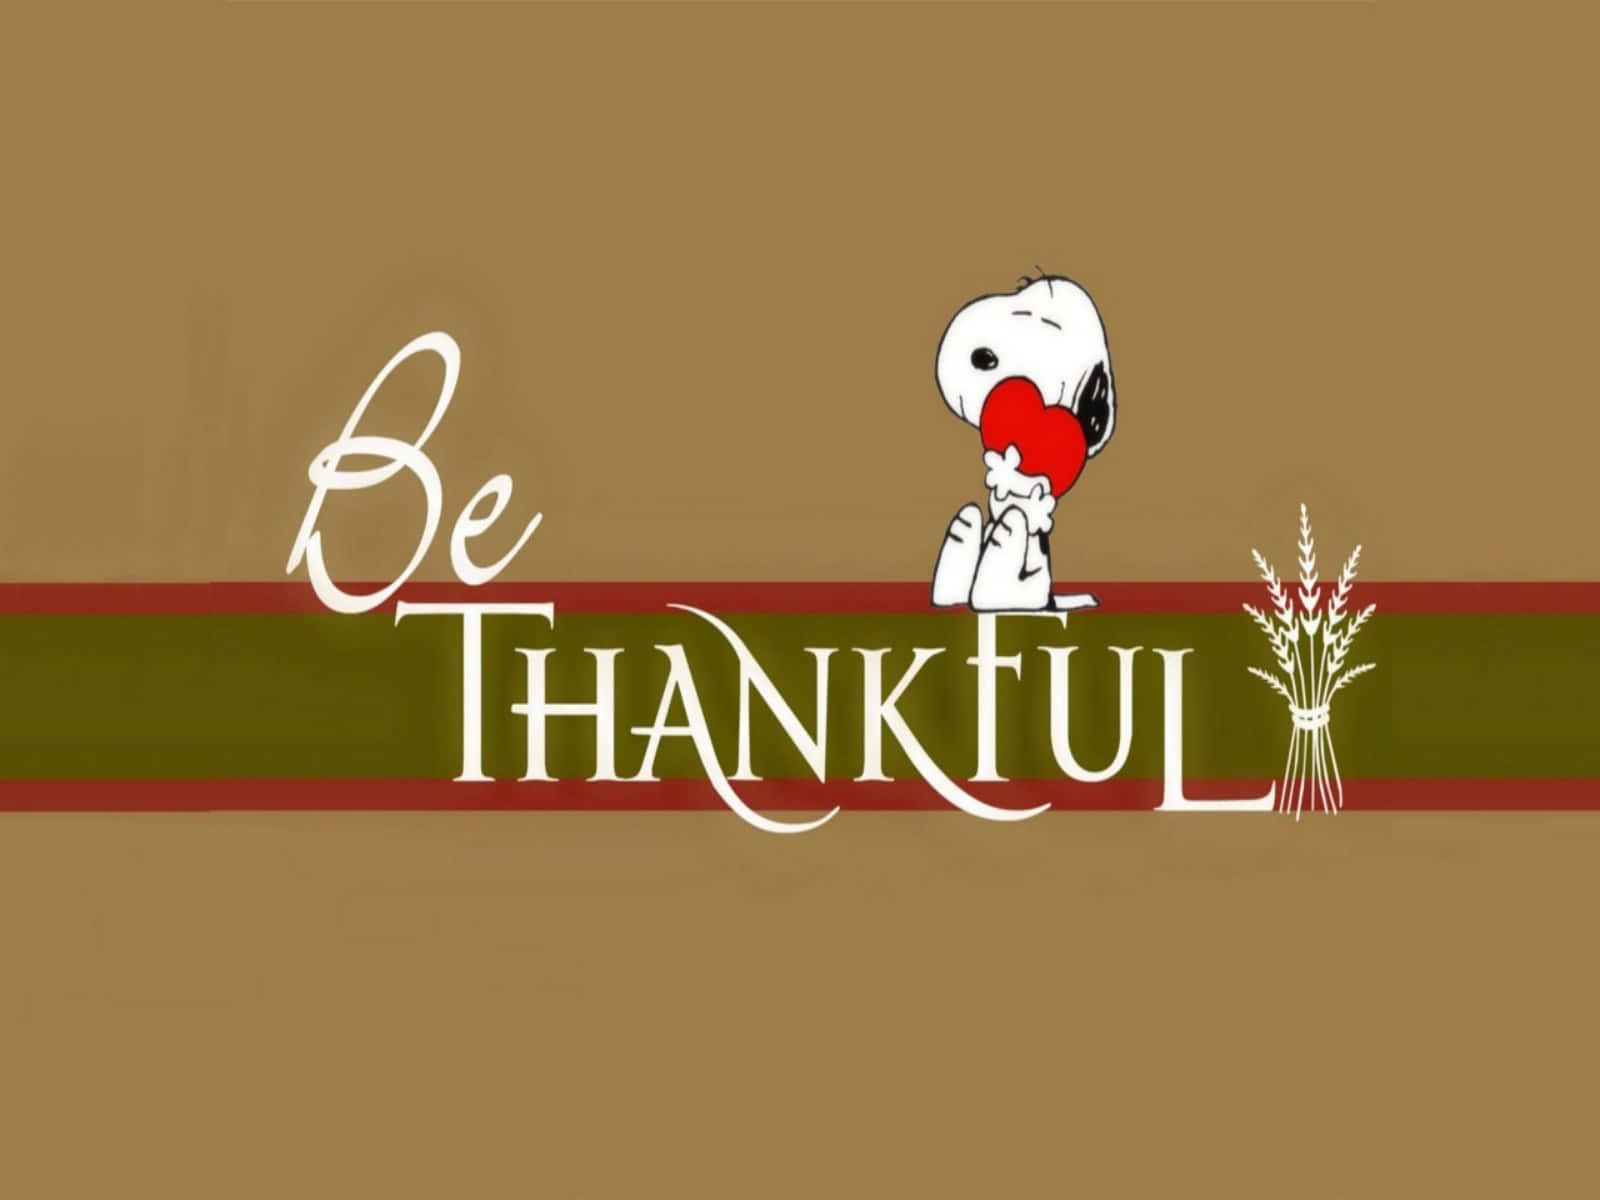 Fondode Pantalla De Alta Resolución De Snoopy En El Día De Acción De Gracias, Sé Agradecido.